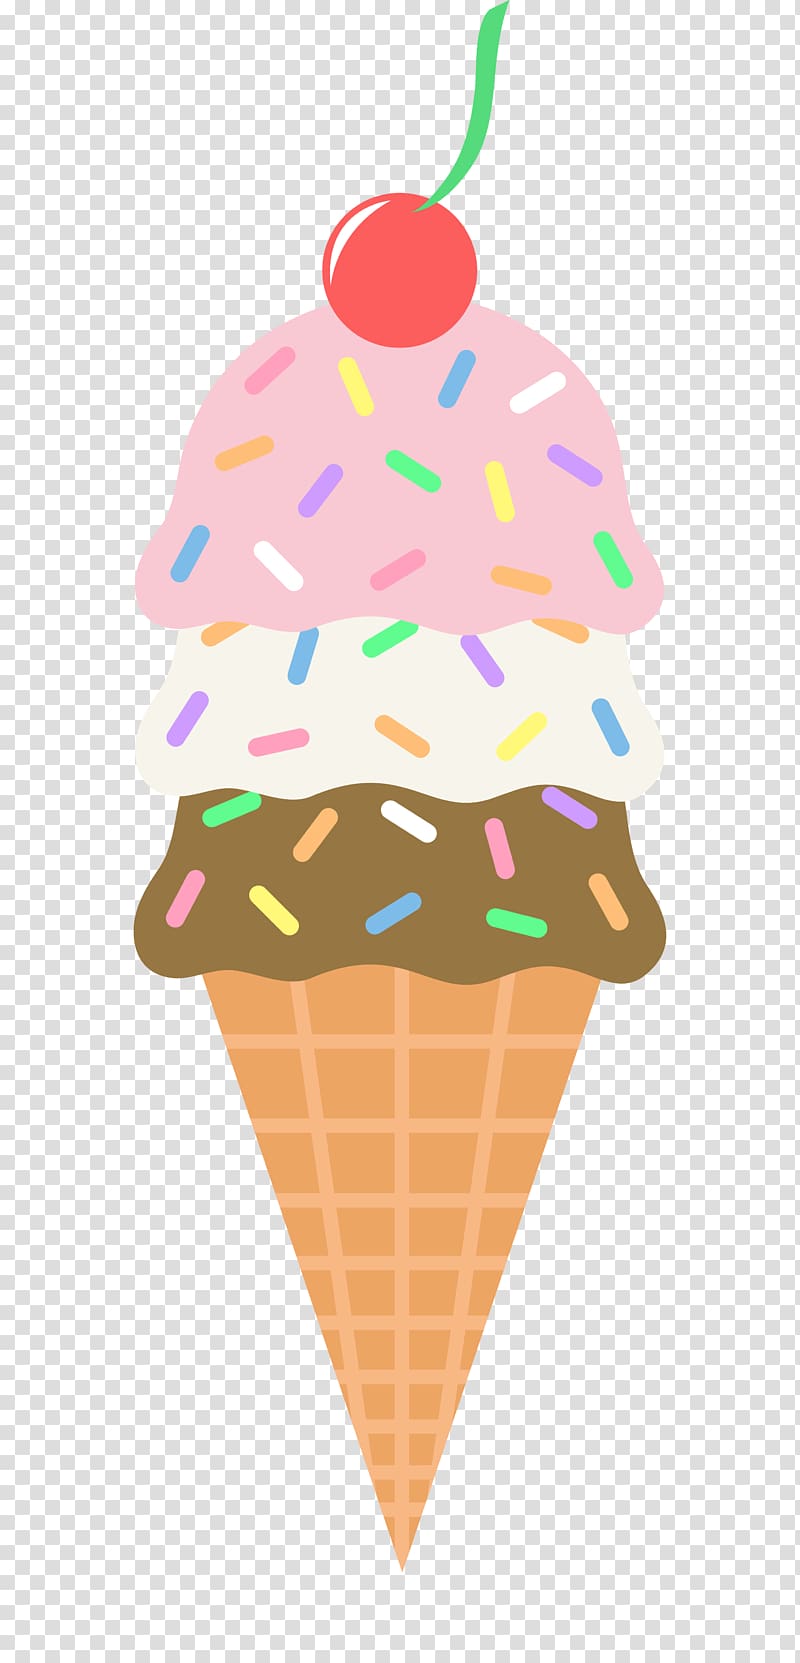 Ice Cream Cones Chocolate ice cream Sundae, ice cream transparent background PNG clipart